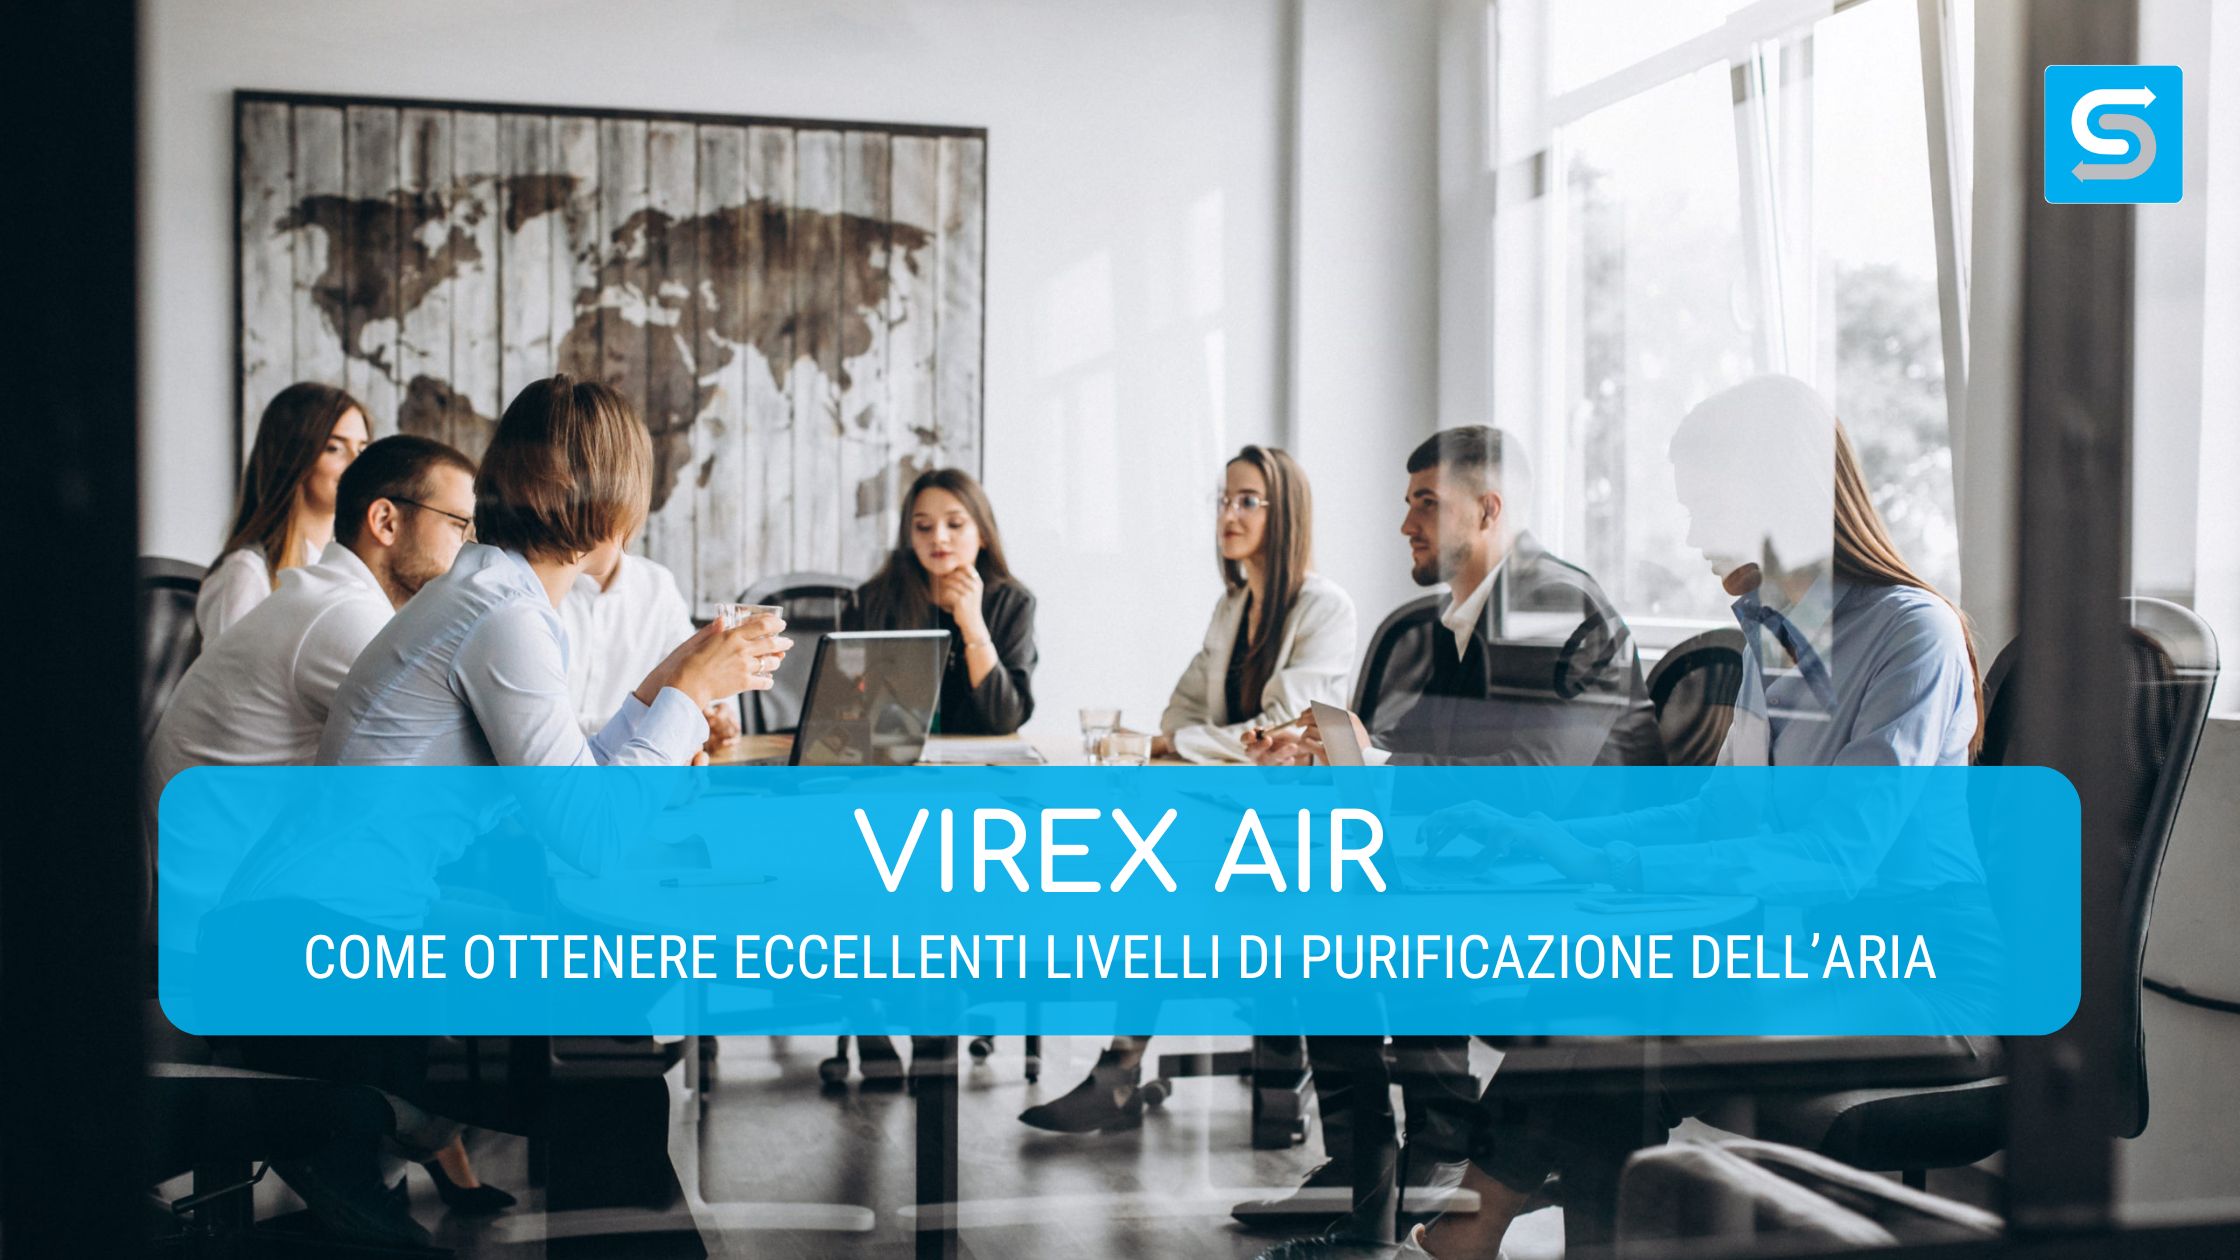 Virex Air